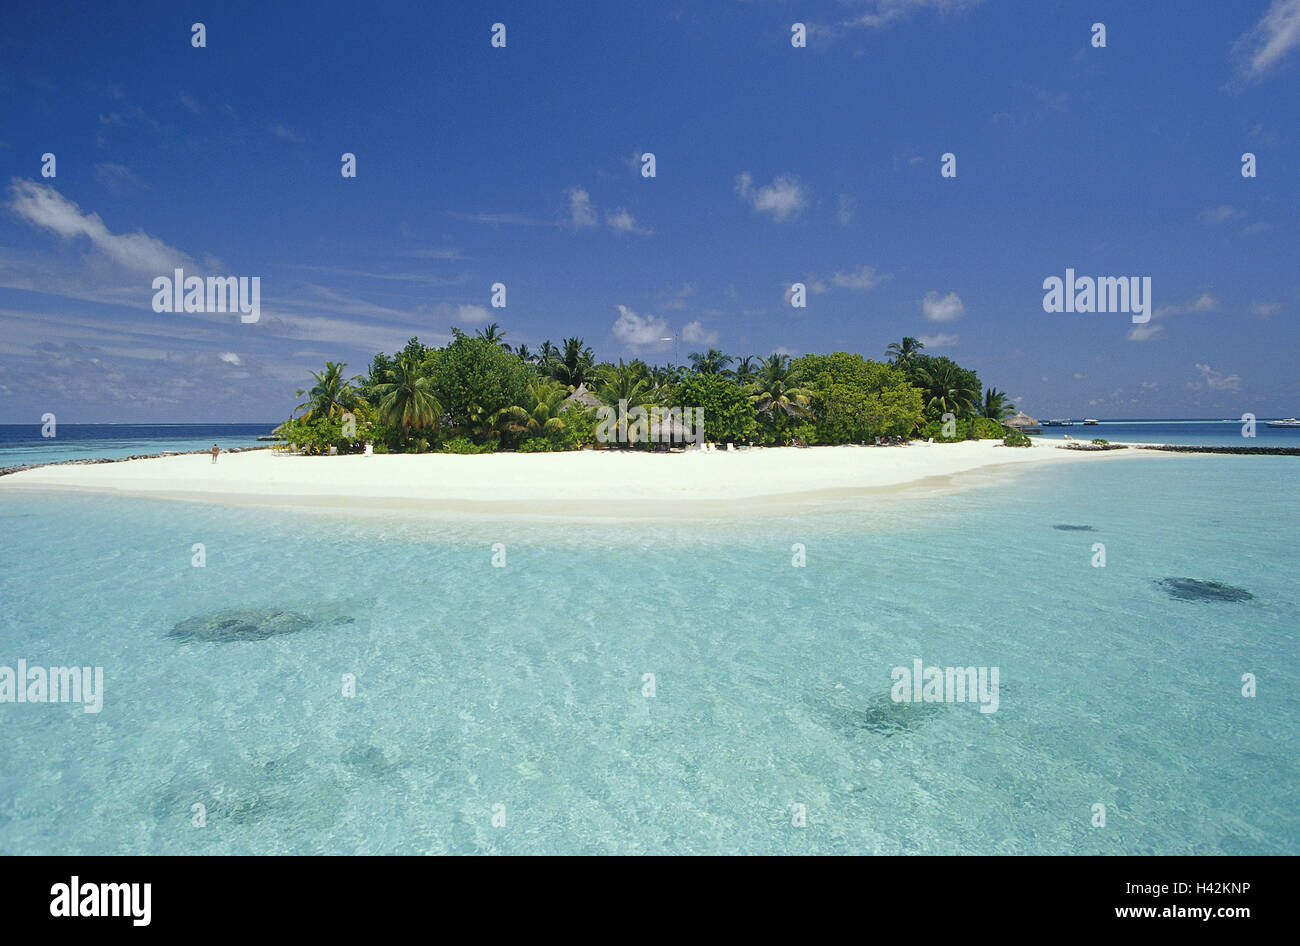 The Maldives, Nakatchafushi, palm island, deserted, sandy beach Stock ...